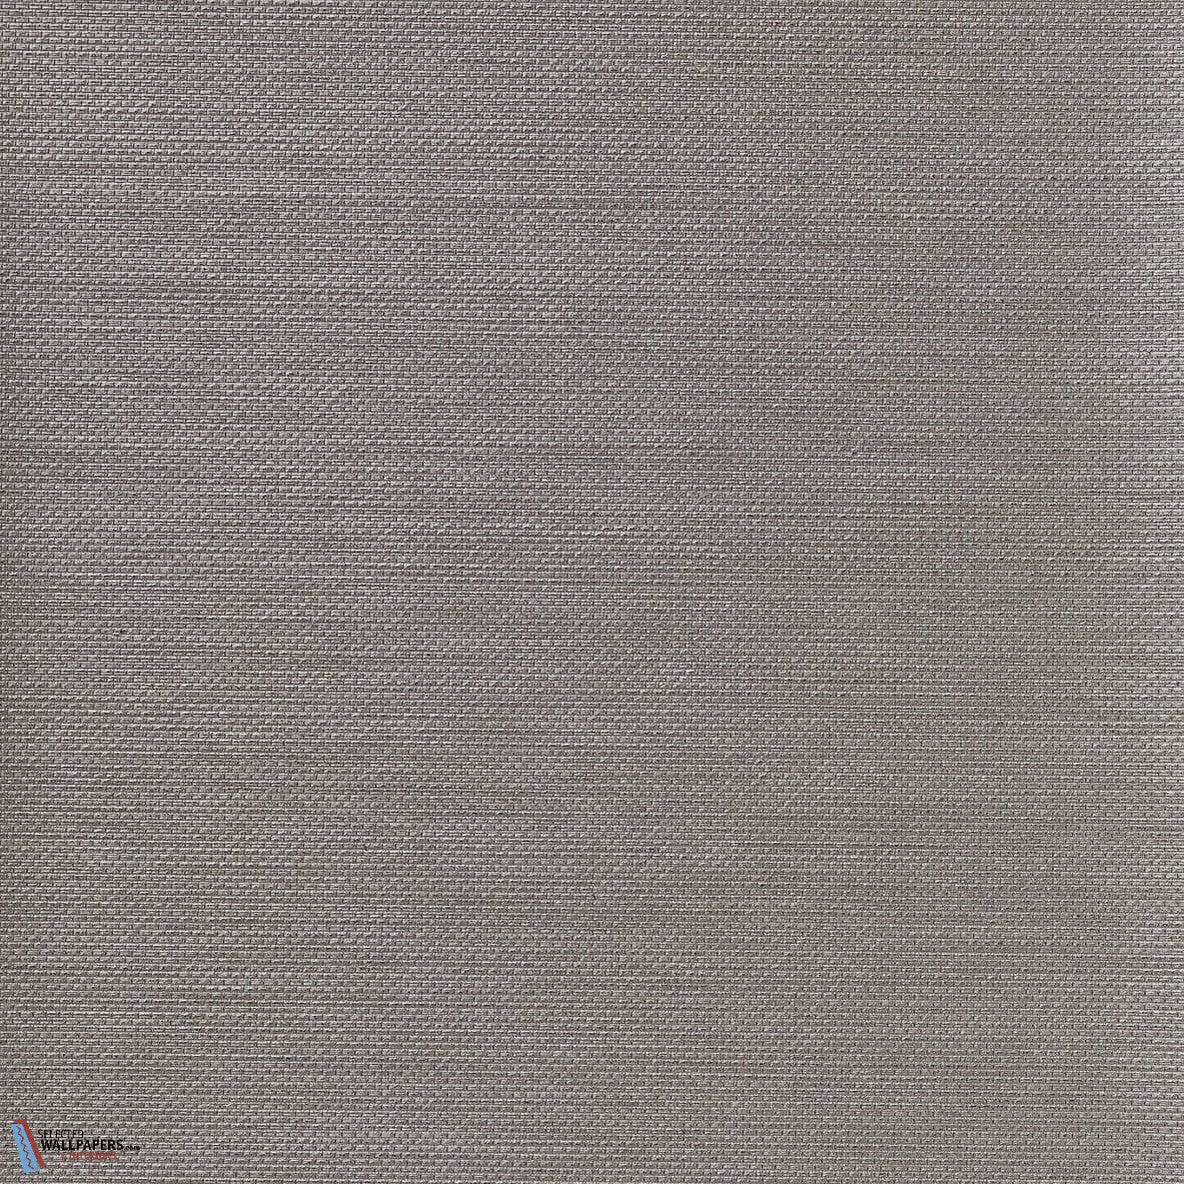 Sagara wallpaper Vescom | wallpaper Sagara 1106.01 – Selected ...